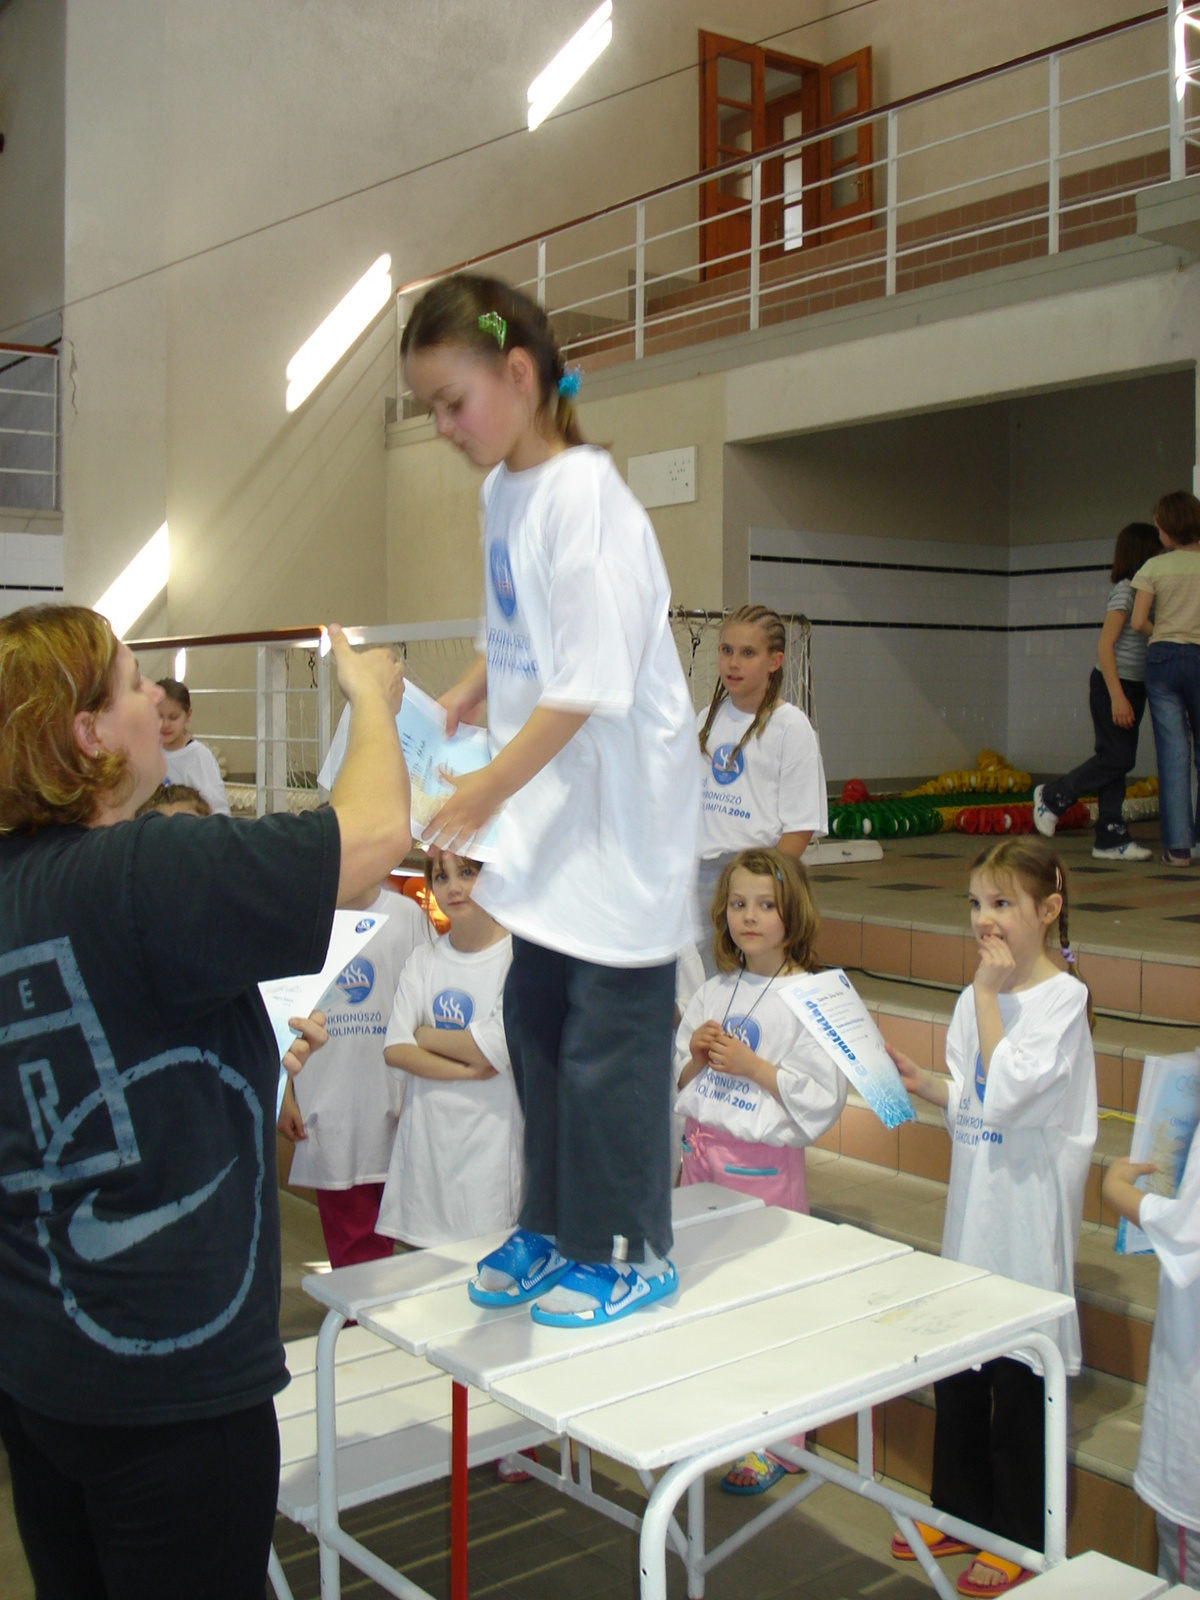 2008 DIÁKOLIMPIA junior ob parkos edzések Petrovszki Ági képek (